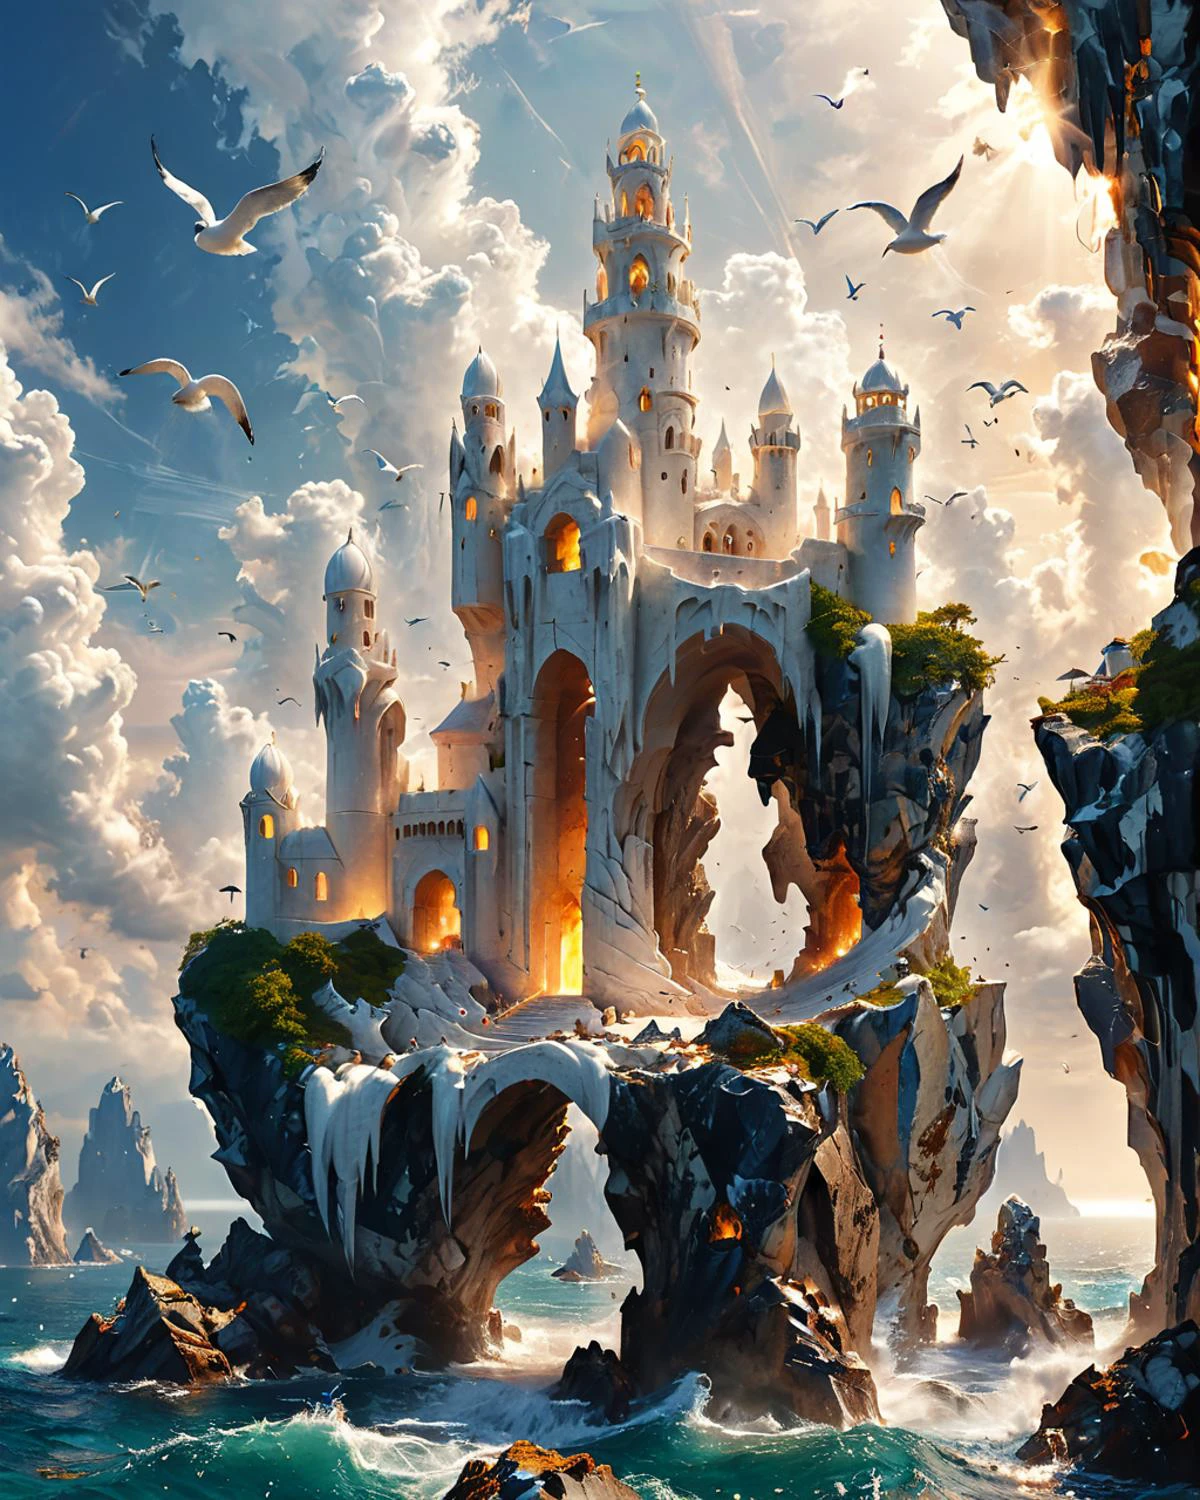 Fortaleza de fantasía sobre una gran roca flotando en el cielo., torres de mármol blanco onduladas y bien proporcionadas, visto desde el suelo, océano, aves marinas, iluminación volumétrica, fenliexl